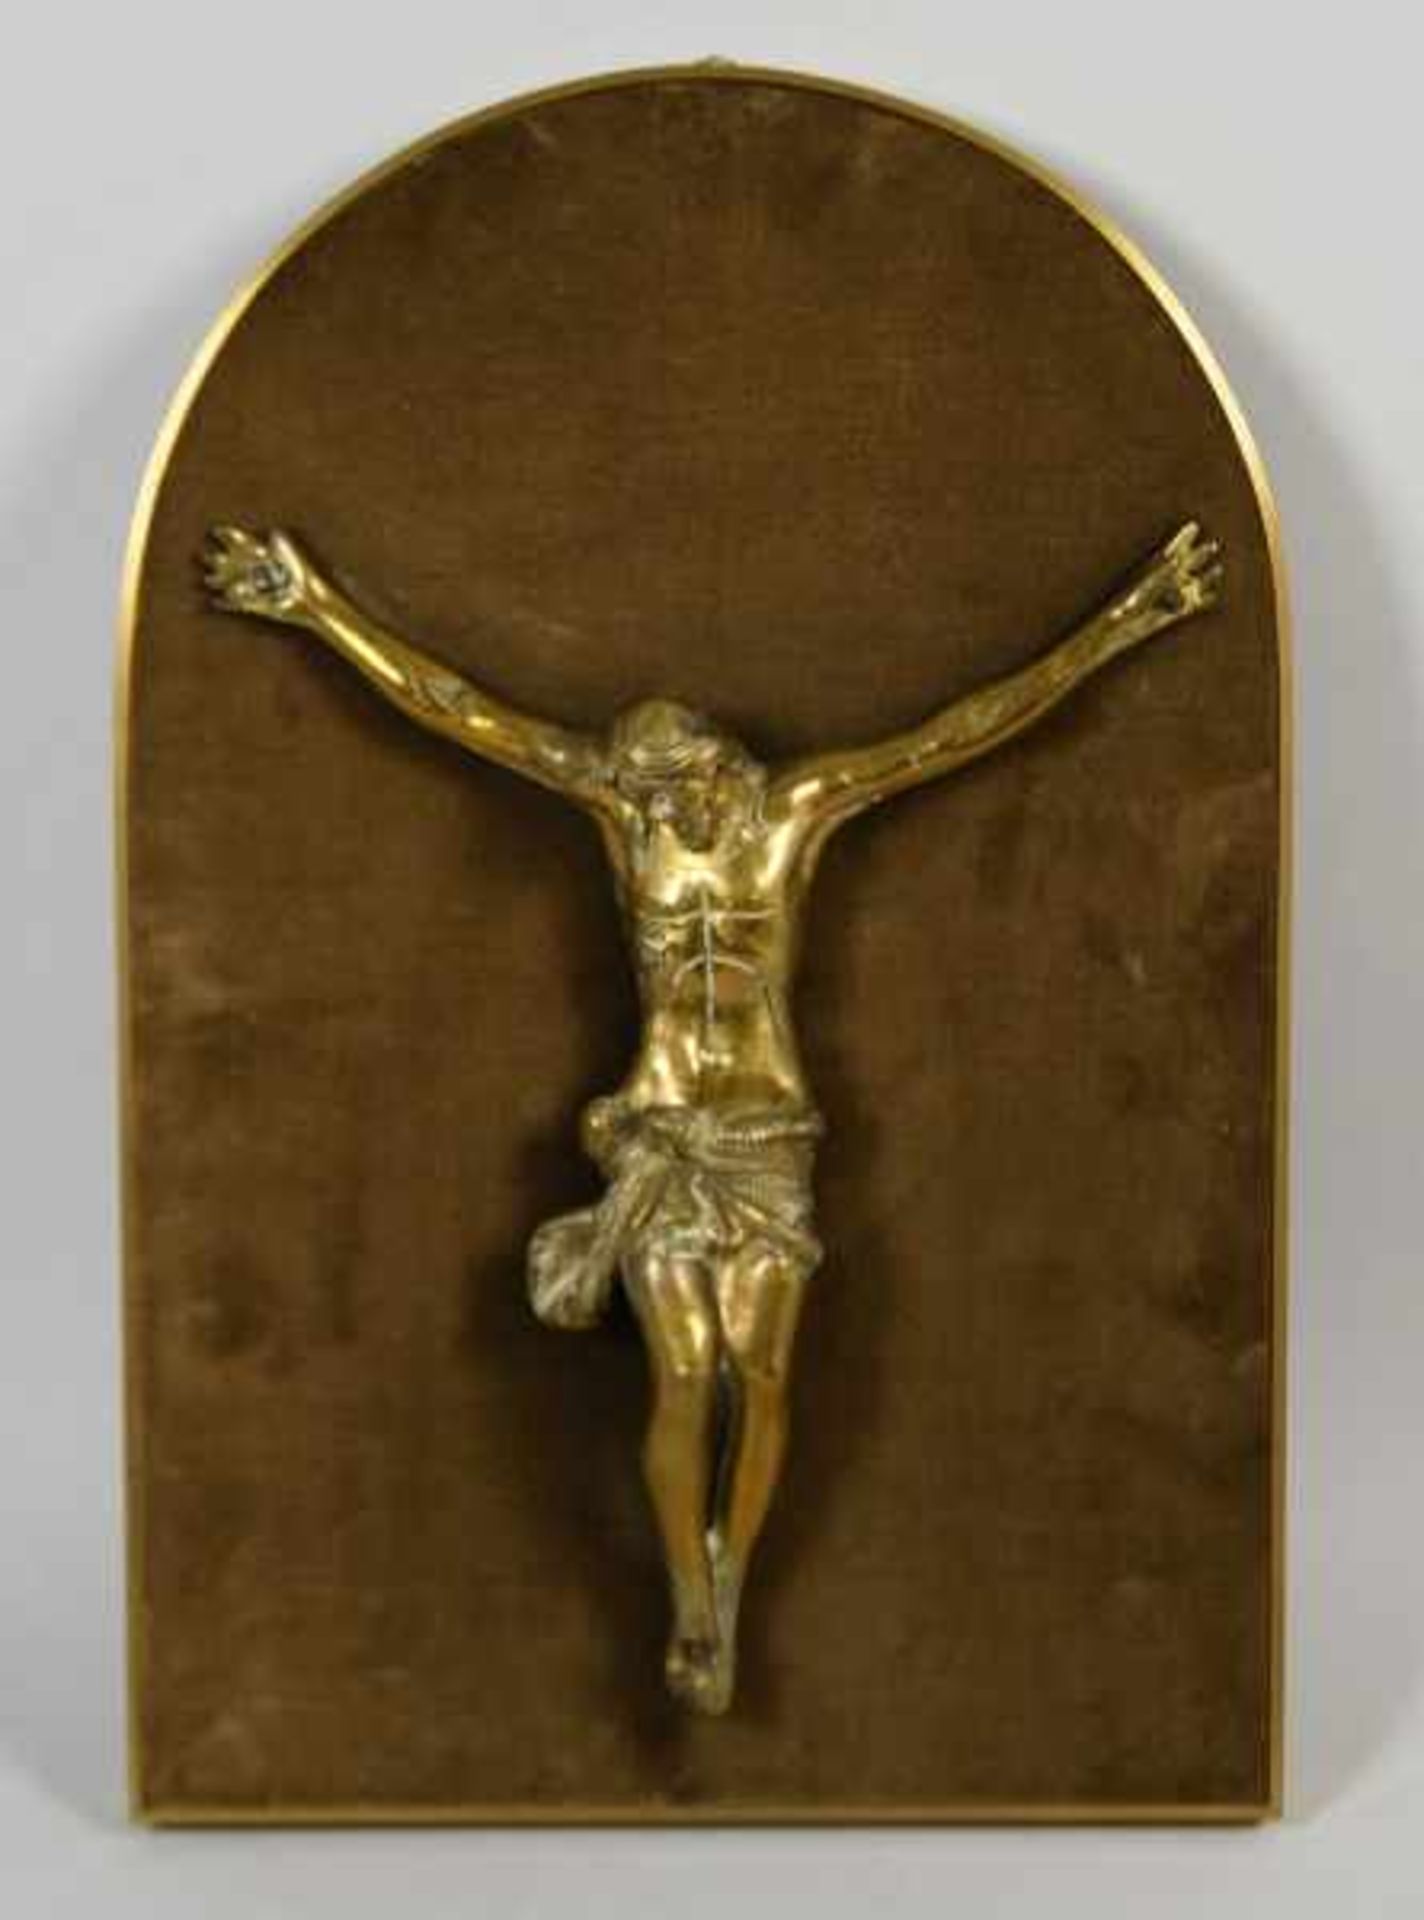 CHRISTUSKORPUS als 3-Nageltypus, vergoldet, monitiert auf samtüberzogener Platte, 24x20cm(Korpus),